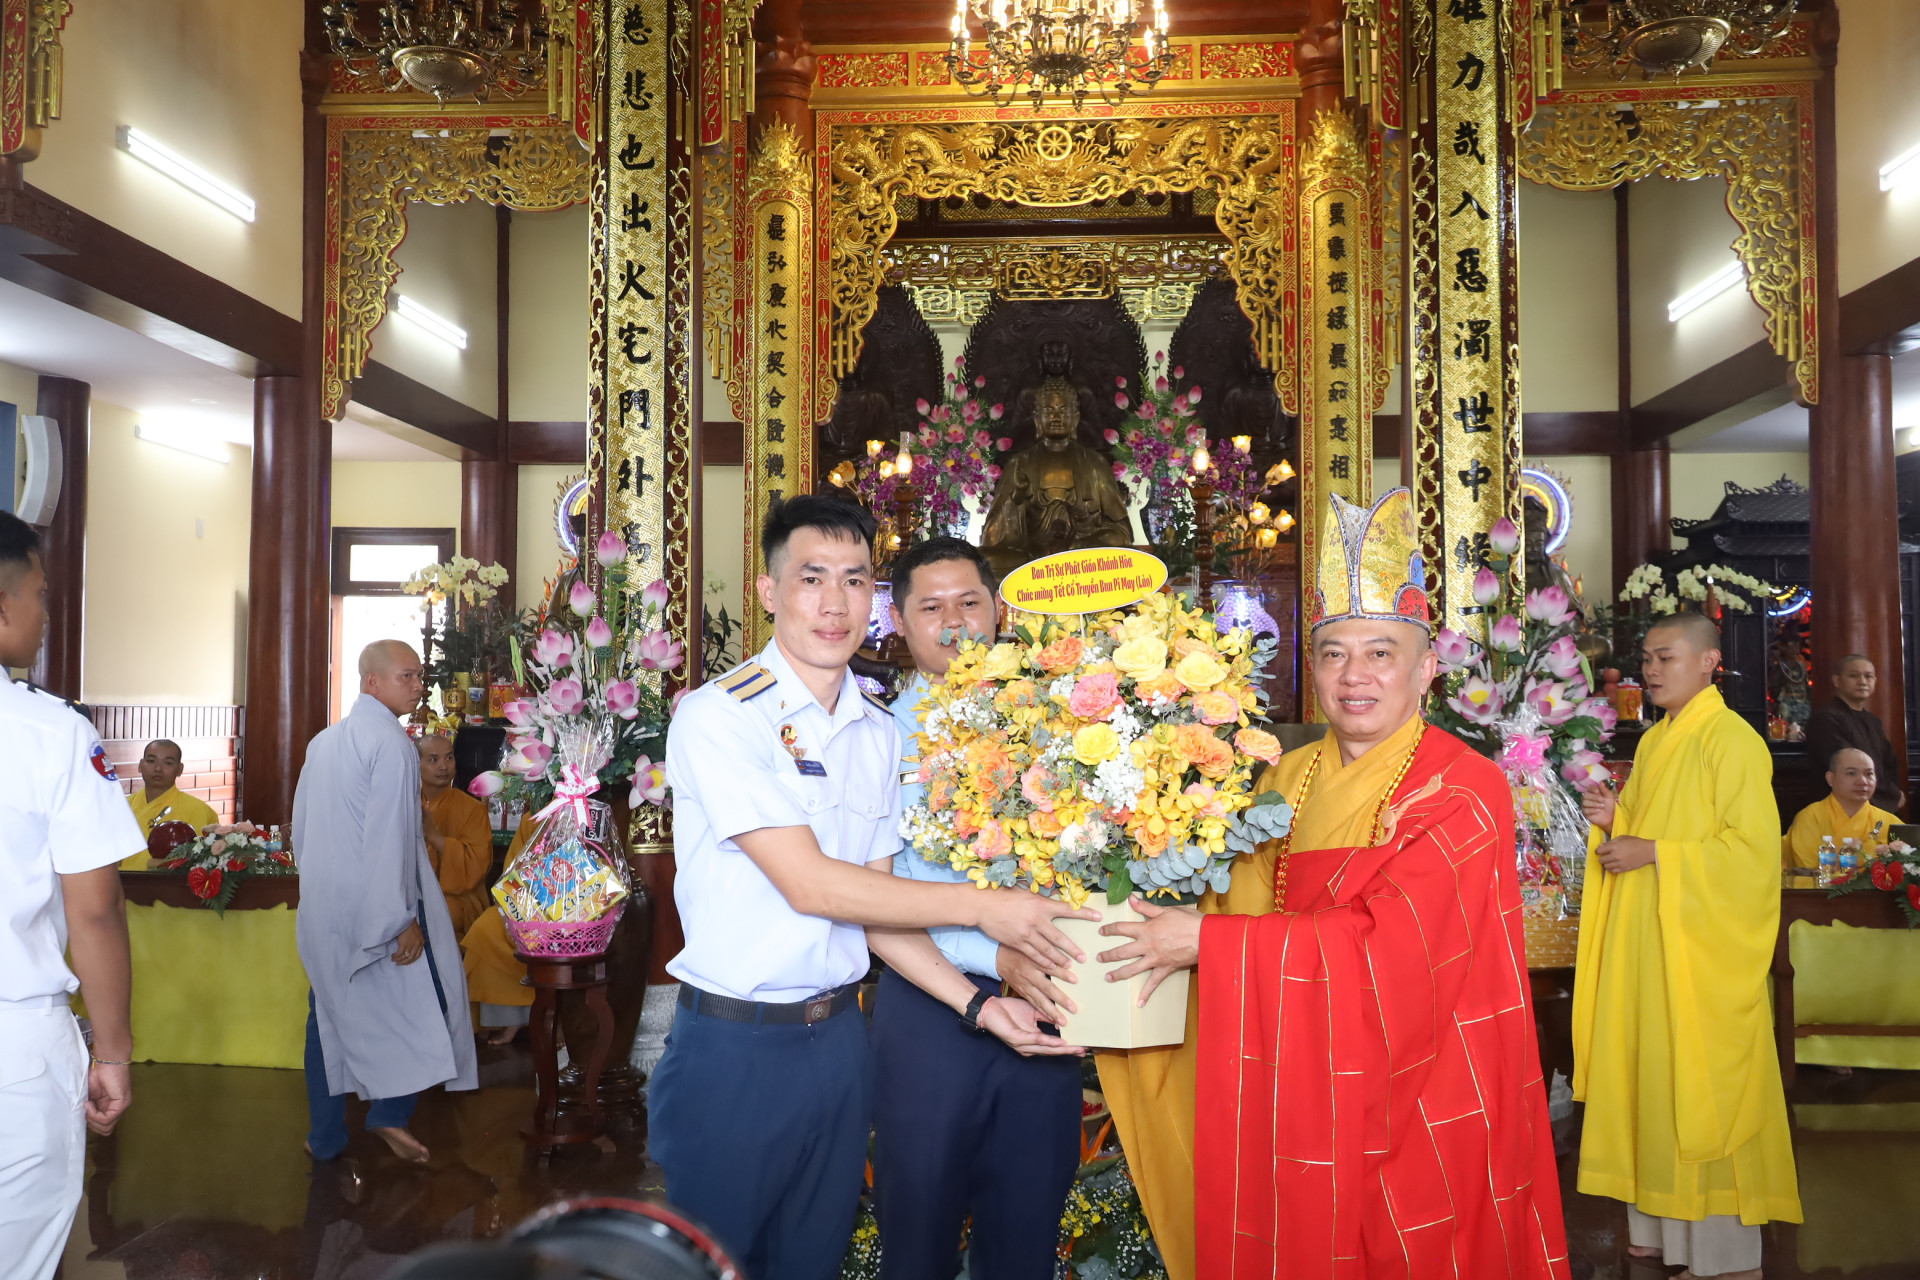 Đại diện chùa Vạn Đức tặng lẵng hoa chúc mừng các sinh viên, học viên Lào, Campuchia nhân dịp tết cổ truyền Bunpimay và Chol Chnam Thmay.